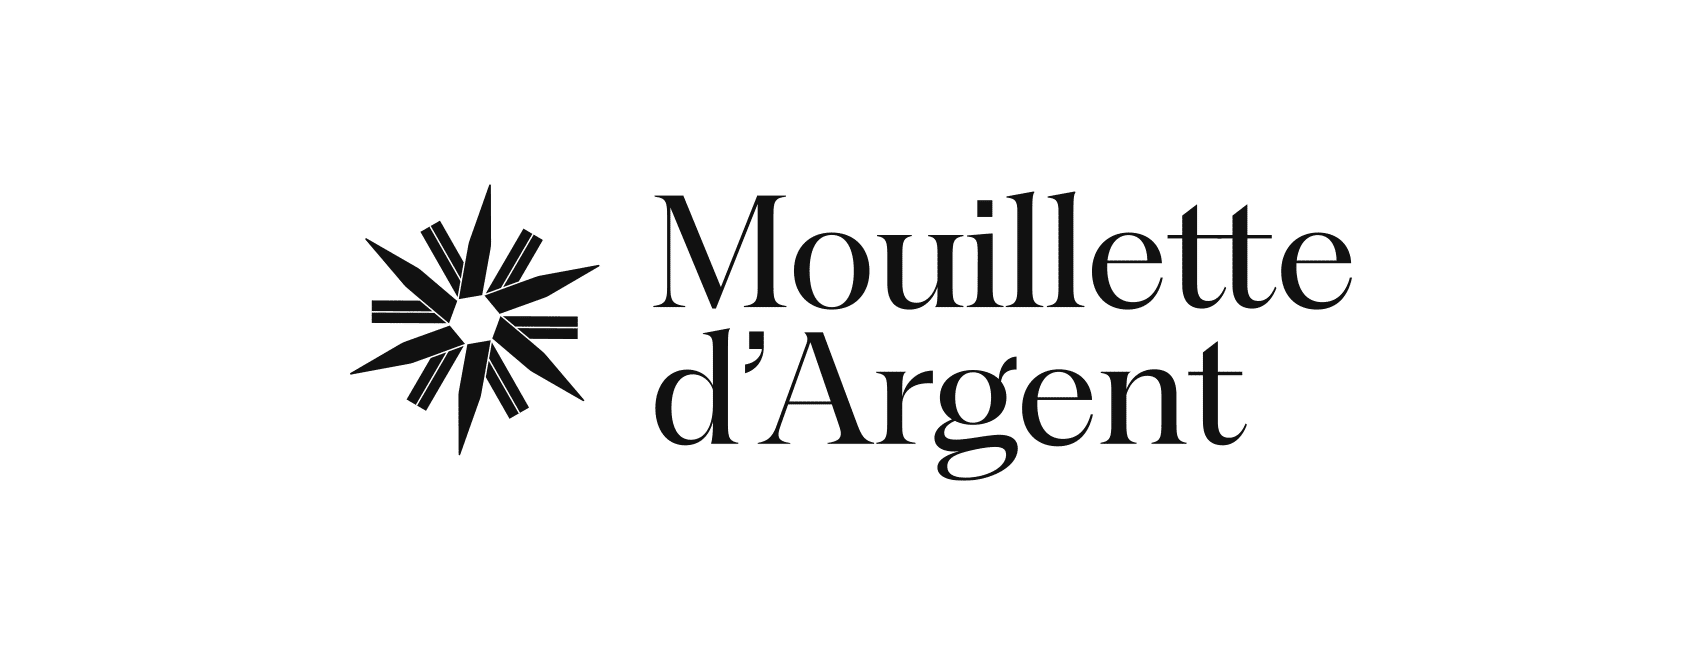 Mouillette_d-Argent-1